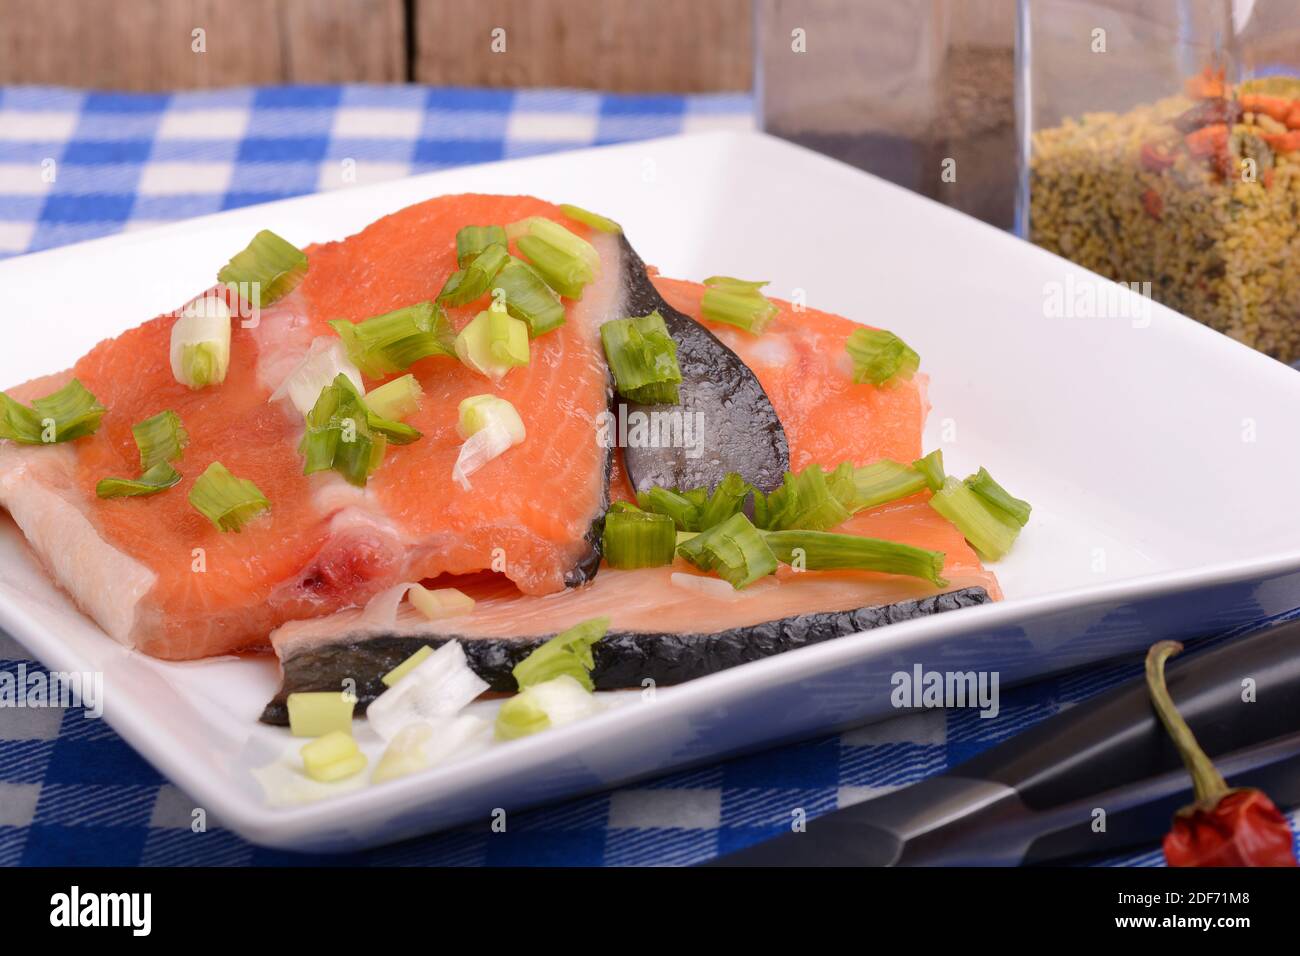 Concepto de comida: Salmón rojo, pimiento picante rojo especia con verduras. Cocina saludable. Foto de stock